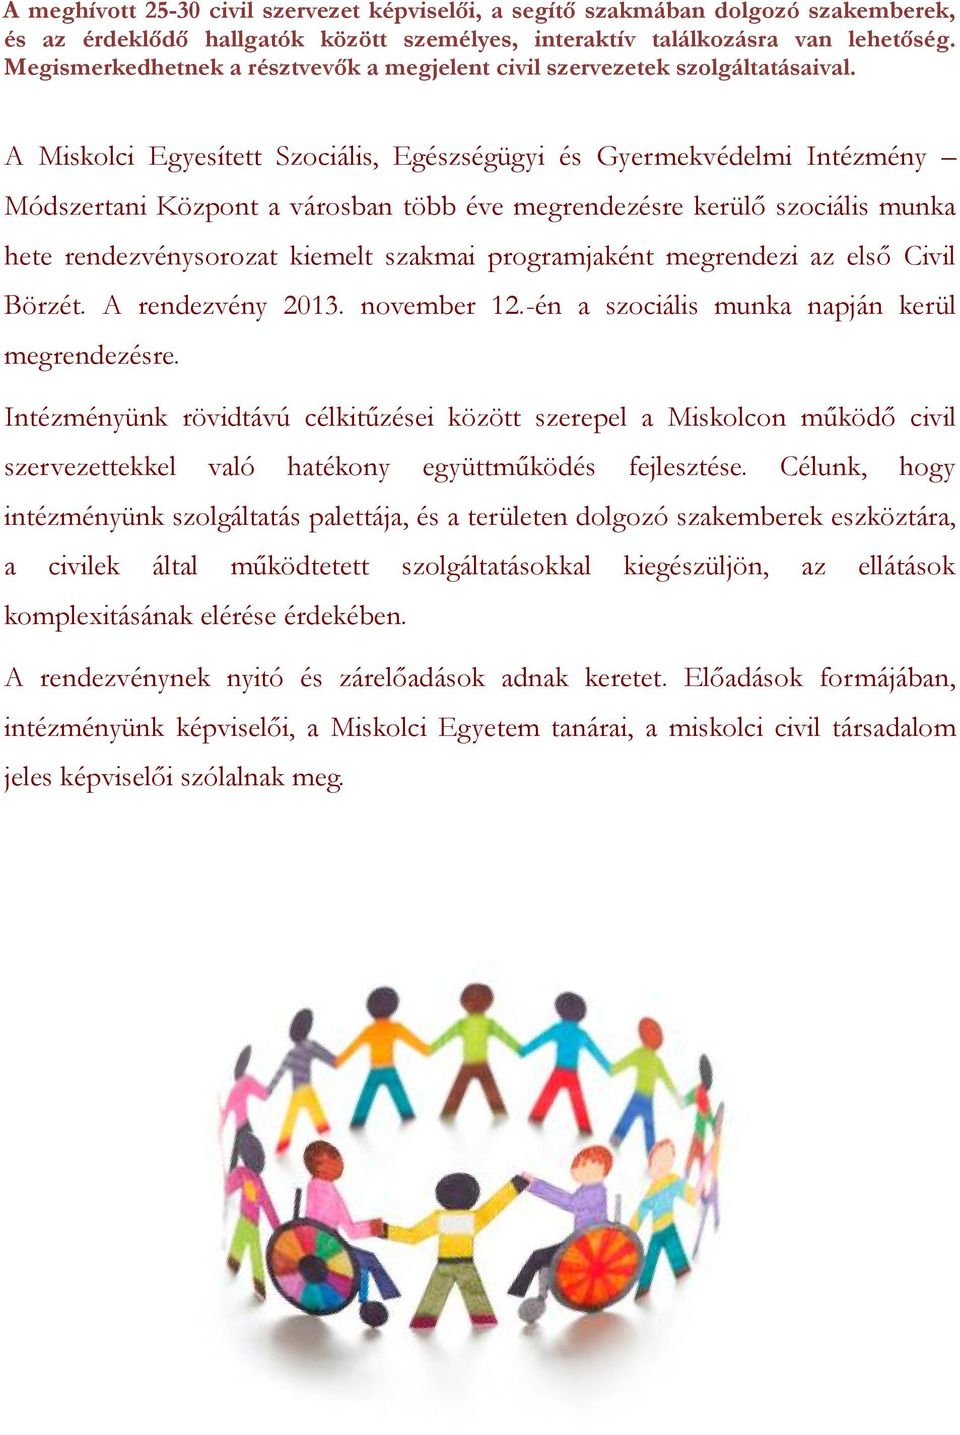 A Miskolci Egyesített Szociális, Egészségügyi és Gyermekvédelmi Intézmény Módszertani Központ a városban több éve megrendezésre kerülő szociális munka hete rendezvénysorozat kiemelt szakmai